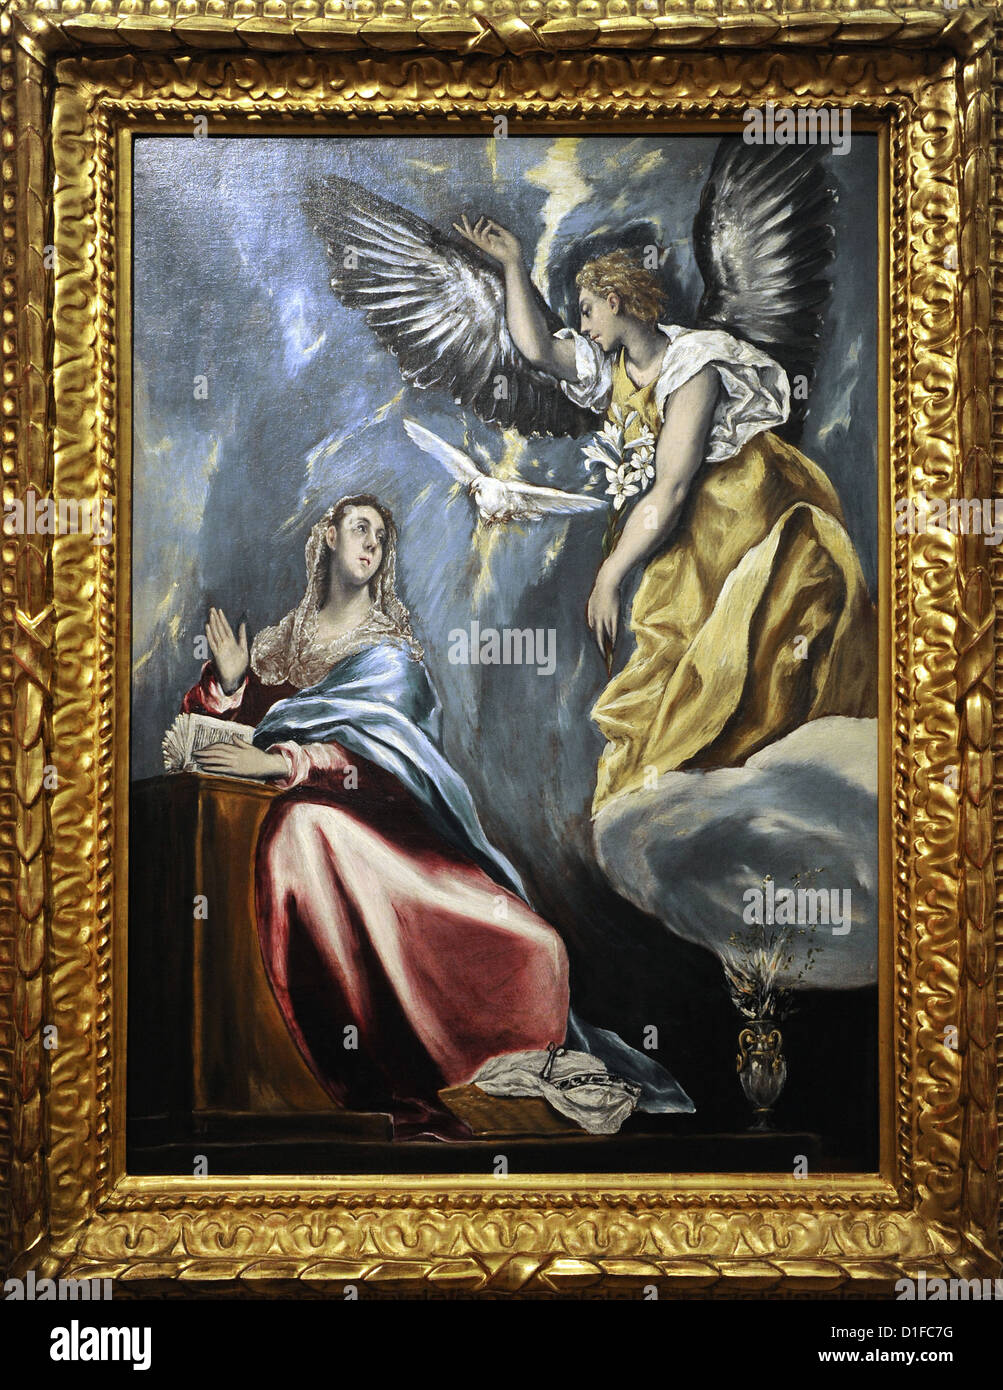 El Greco (1541-1614). Kretischen Maler. Die Verkündigung, c.1600. Museum der bildenden Künste. Budapest. Ungarn. Stockfoto